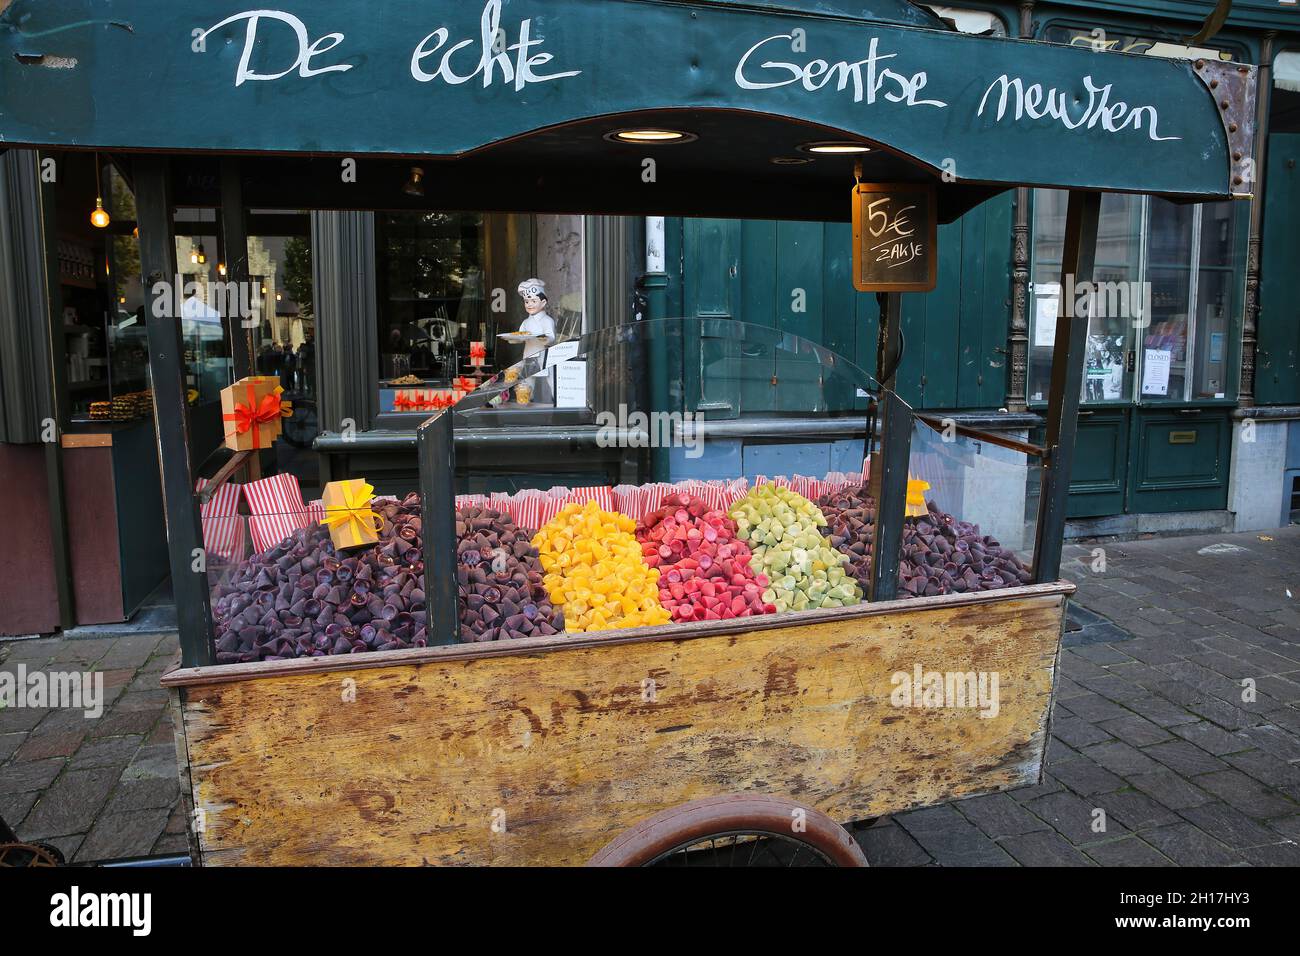 Gand, Belgique - octobre 9.2021: Gros plan d'un chariot en bois vintage à l'avant du magasin avec un casézen de cuberdon de gentse typique coloré (gros plan sur le chariot) Banque D'Images